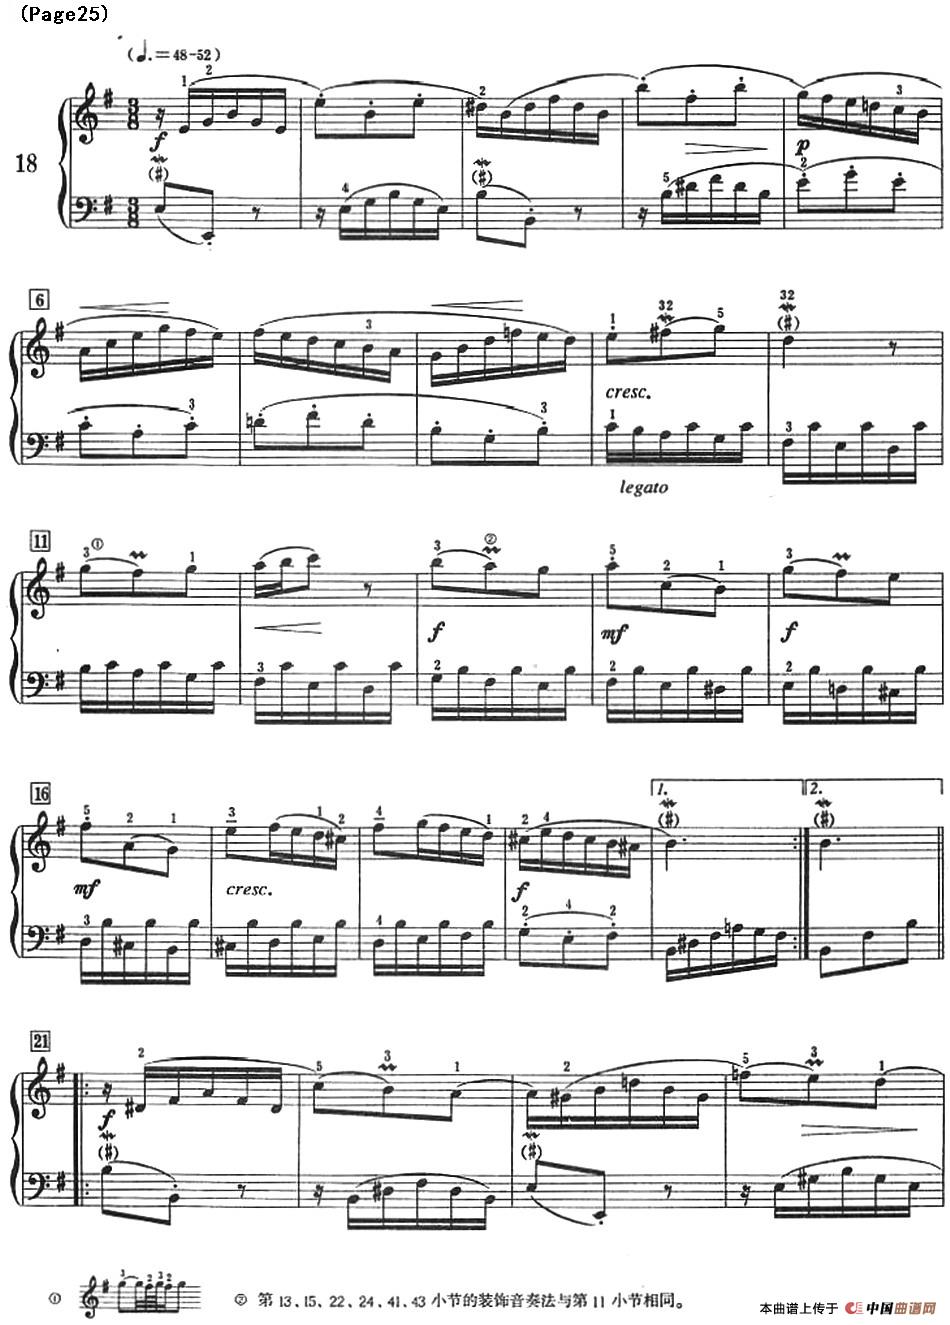 巴赫小前奏曲（NO.17-NO.18）(1)_Bach Little Prelude and Fugue_页面_30.jpg